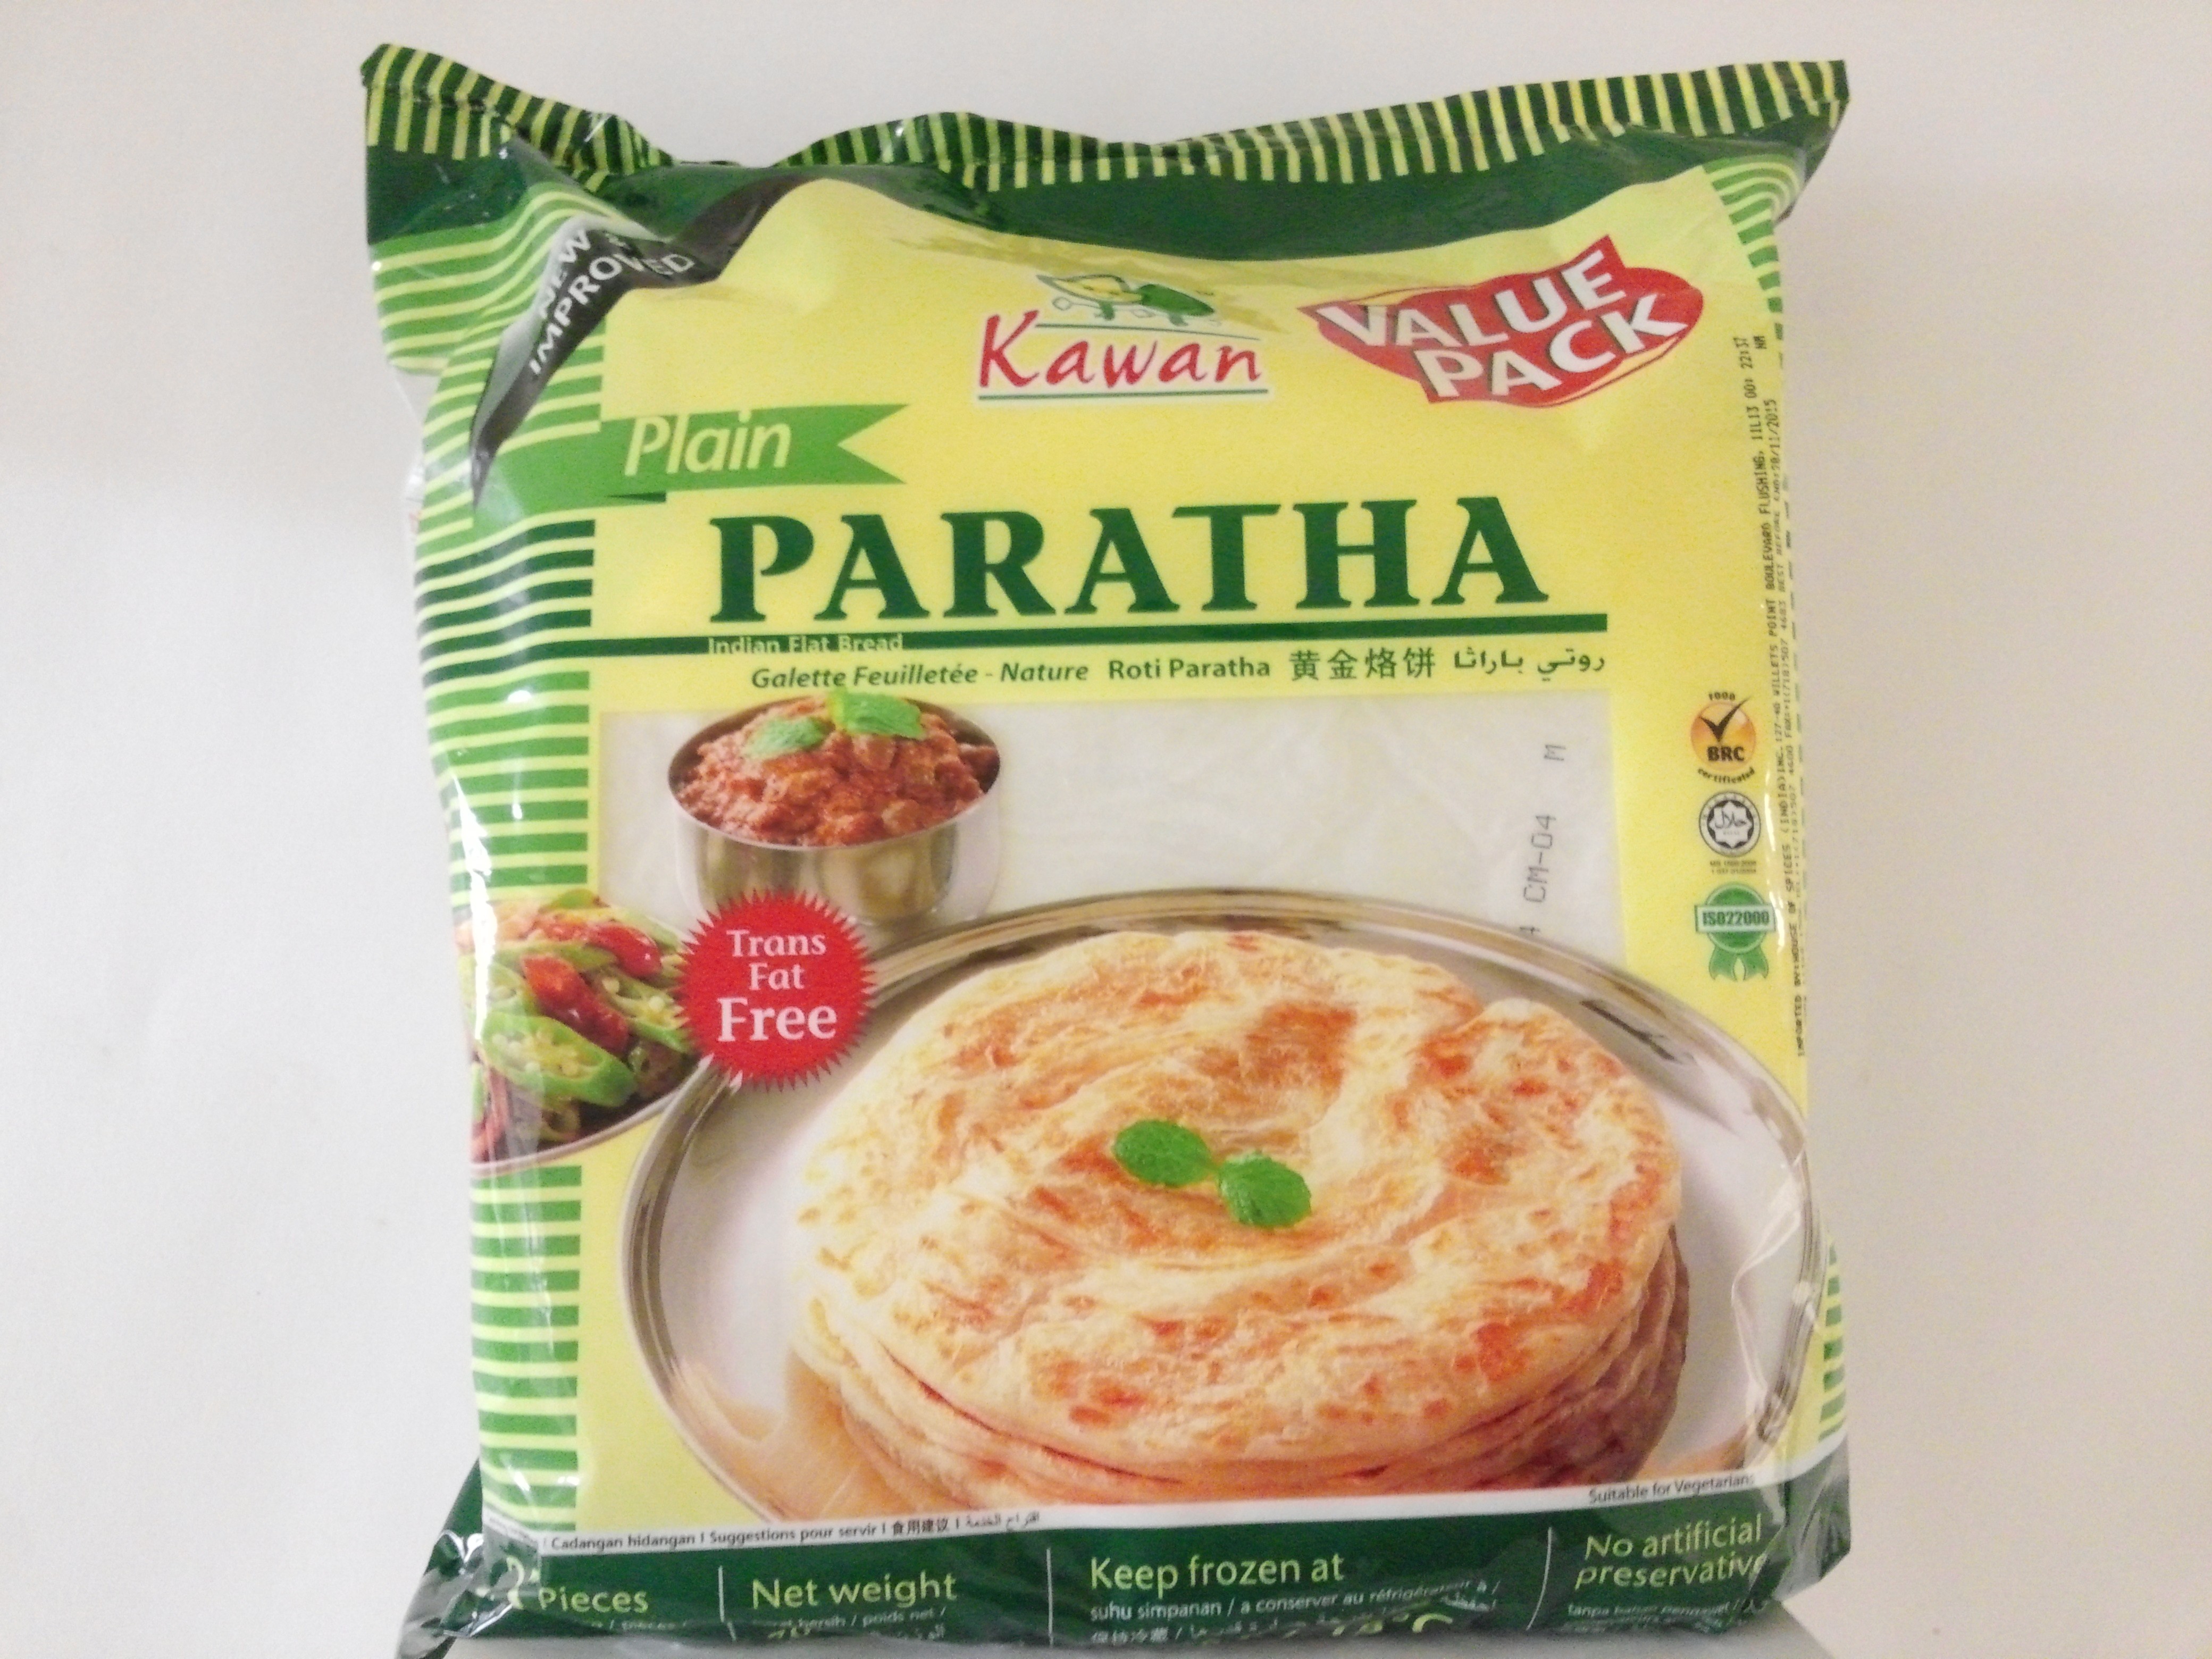 Kawan Plain Paratha (Value Pack) 25 Pcs 70.5 oz